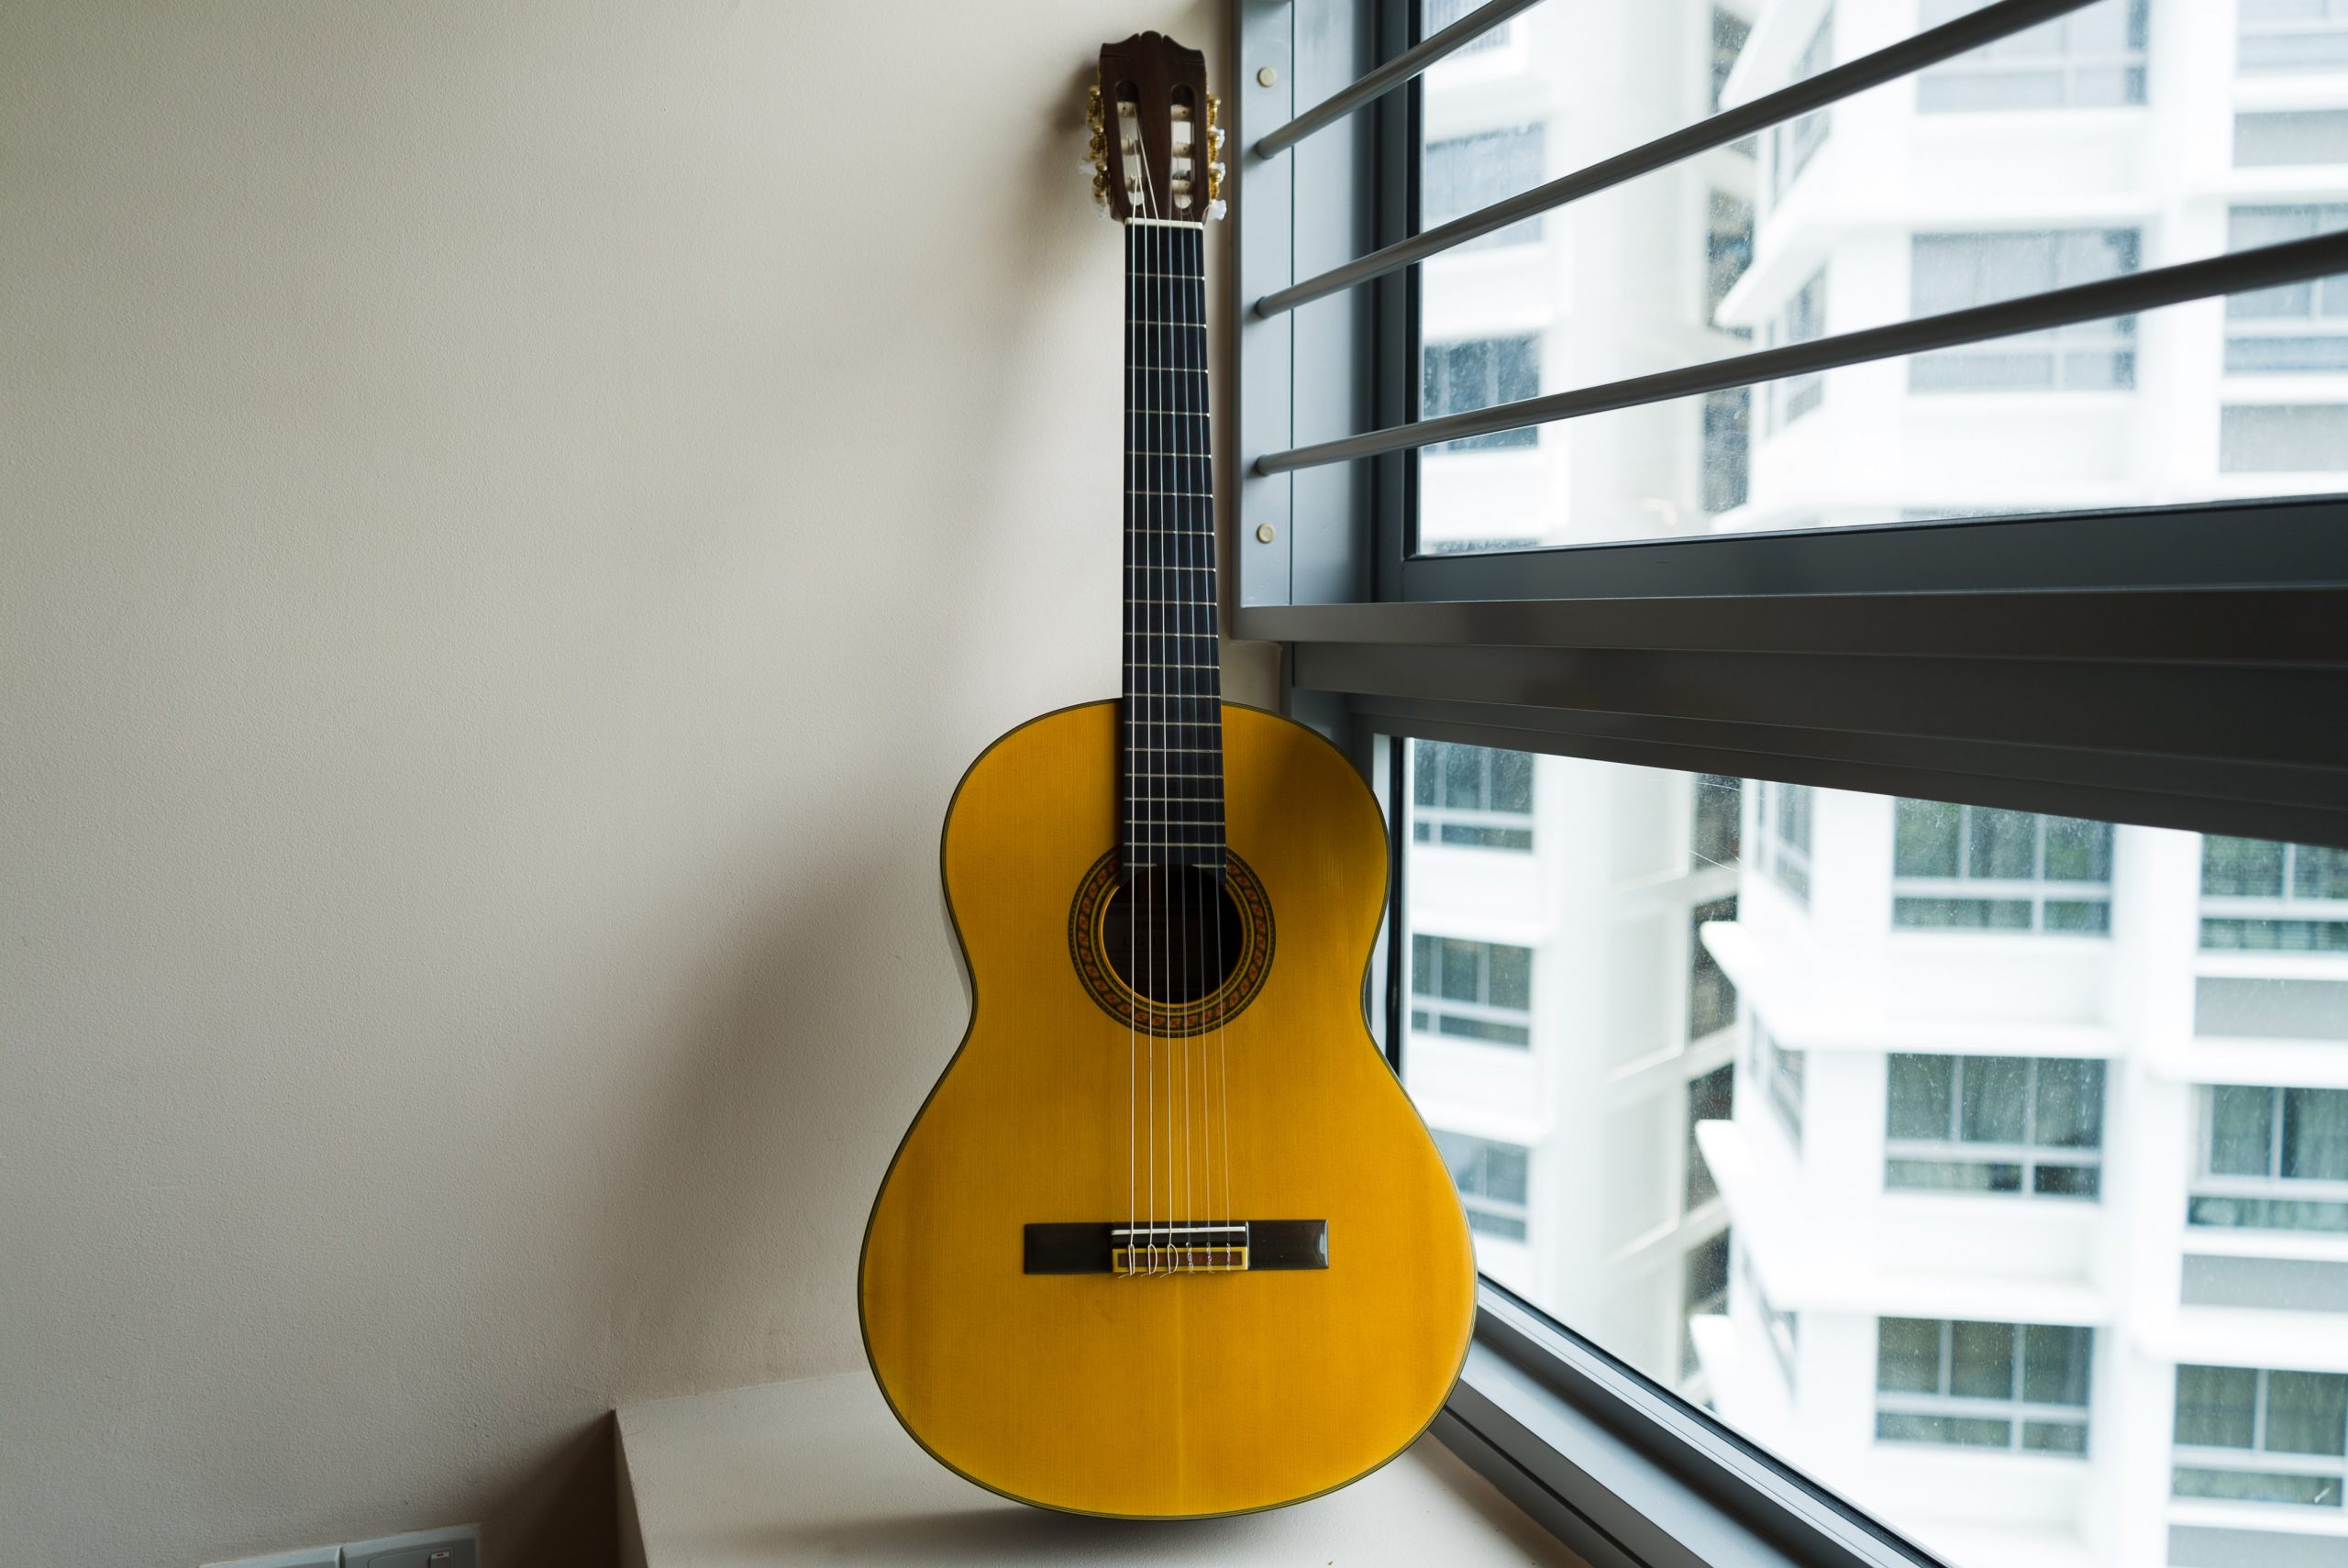 Guitar near open window